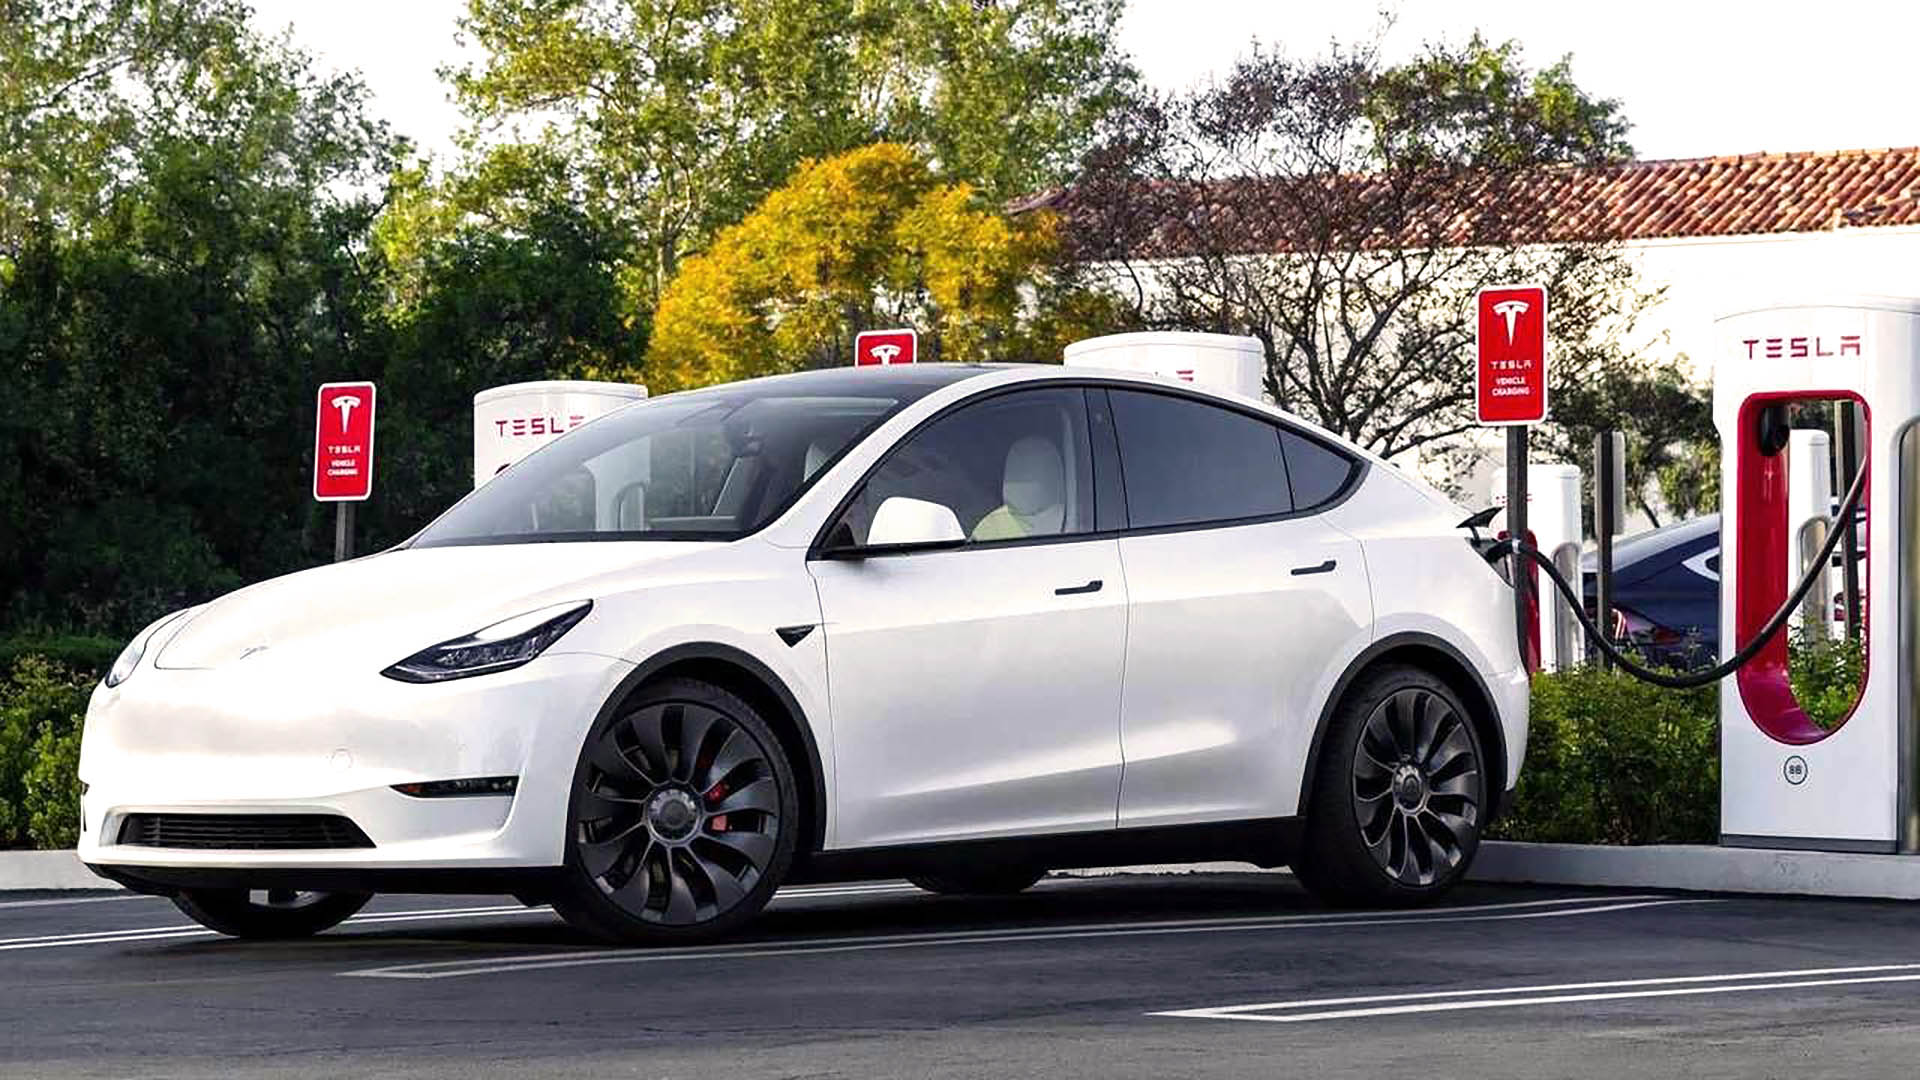 El Tesla Model Y es el segundo SUV más vendido del mundo, y el vehículo eléctrico de mayor demanda, con 758.605 autos